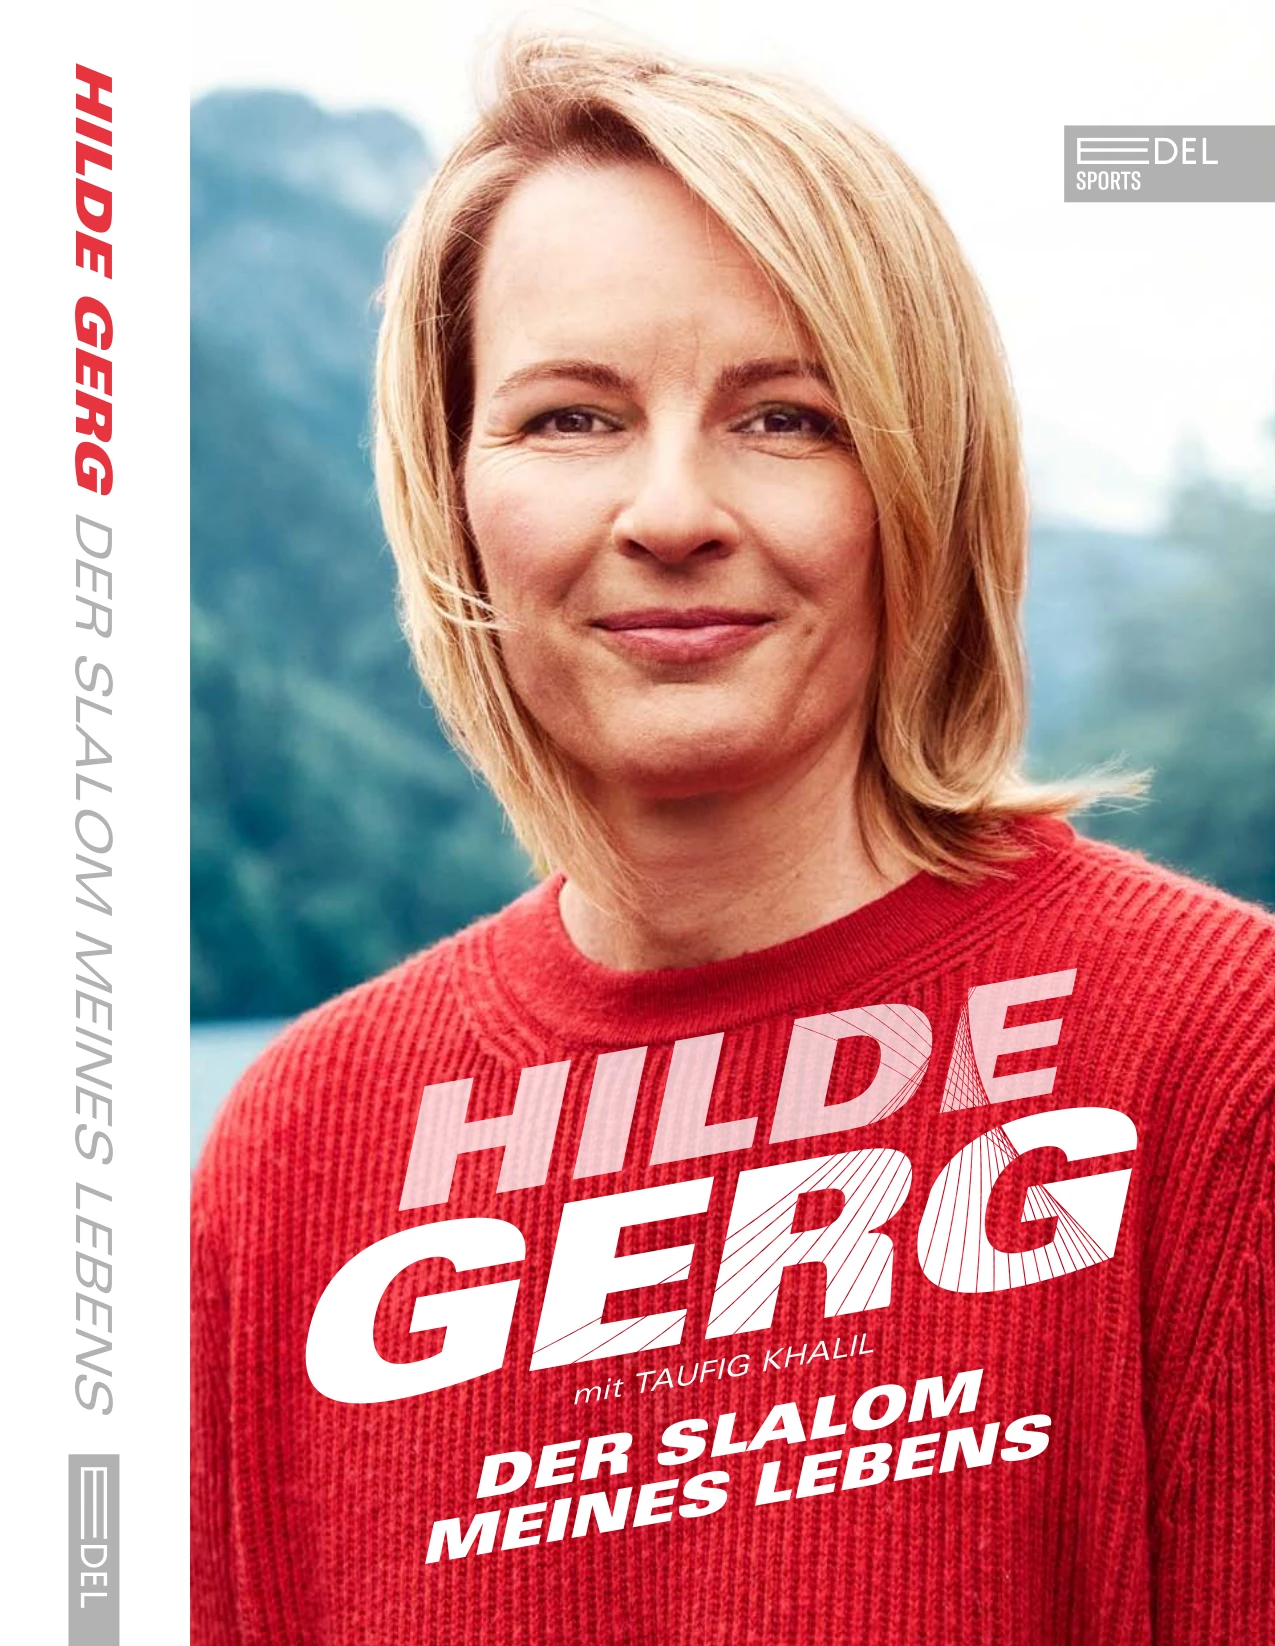 Hilde Gergs Buch - Der Slalom meines Lebens